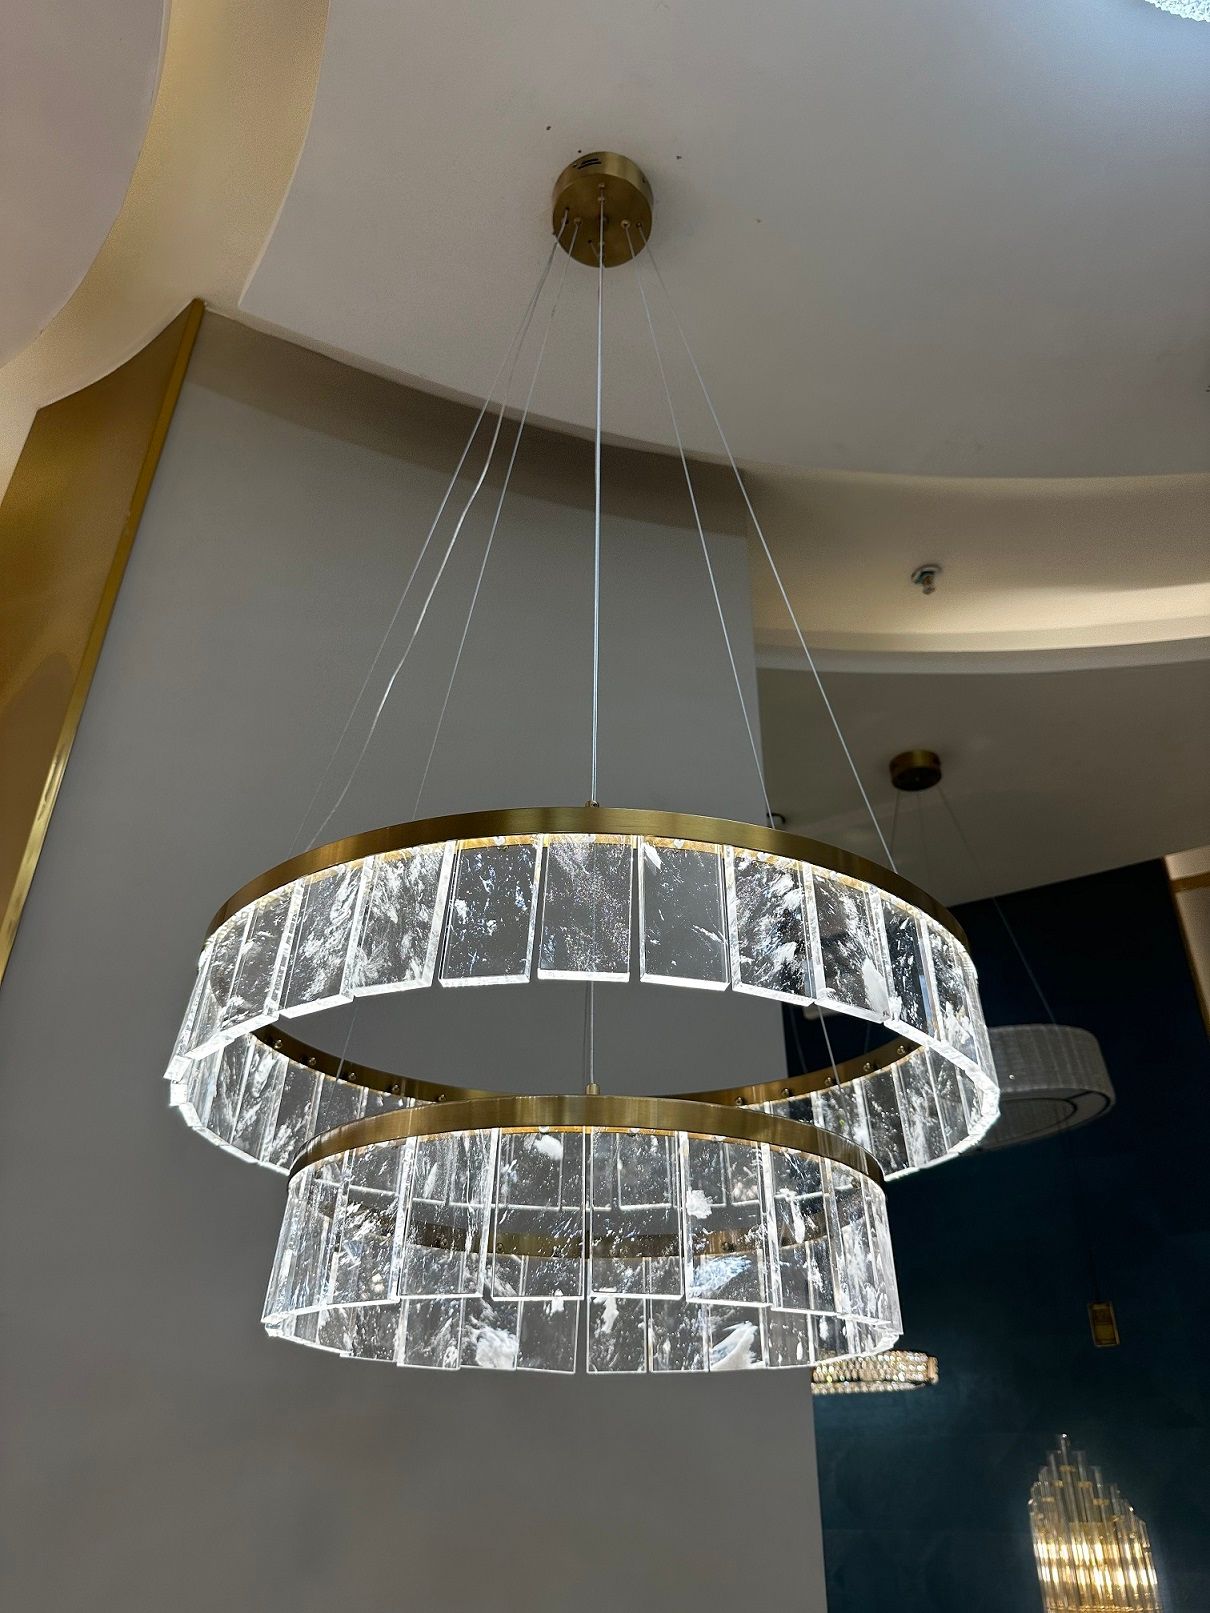 BERAW chandelier by Romatti